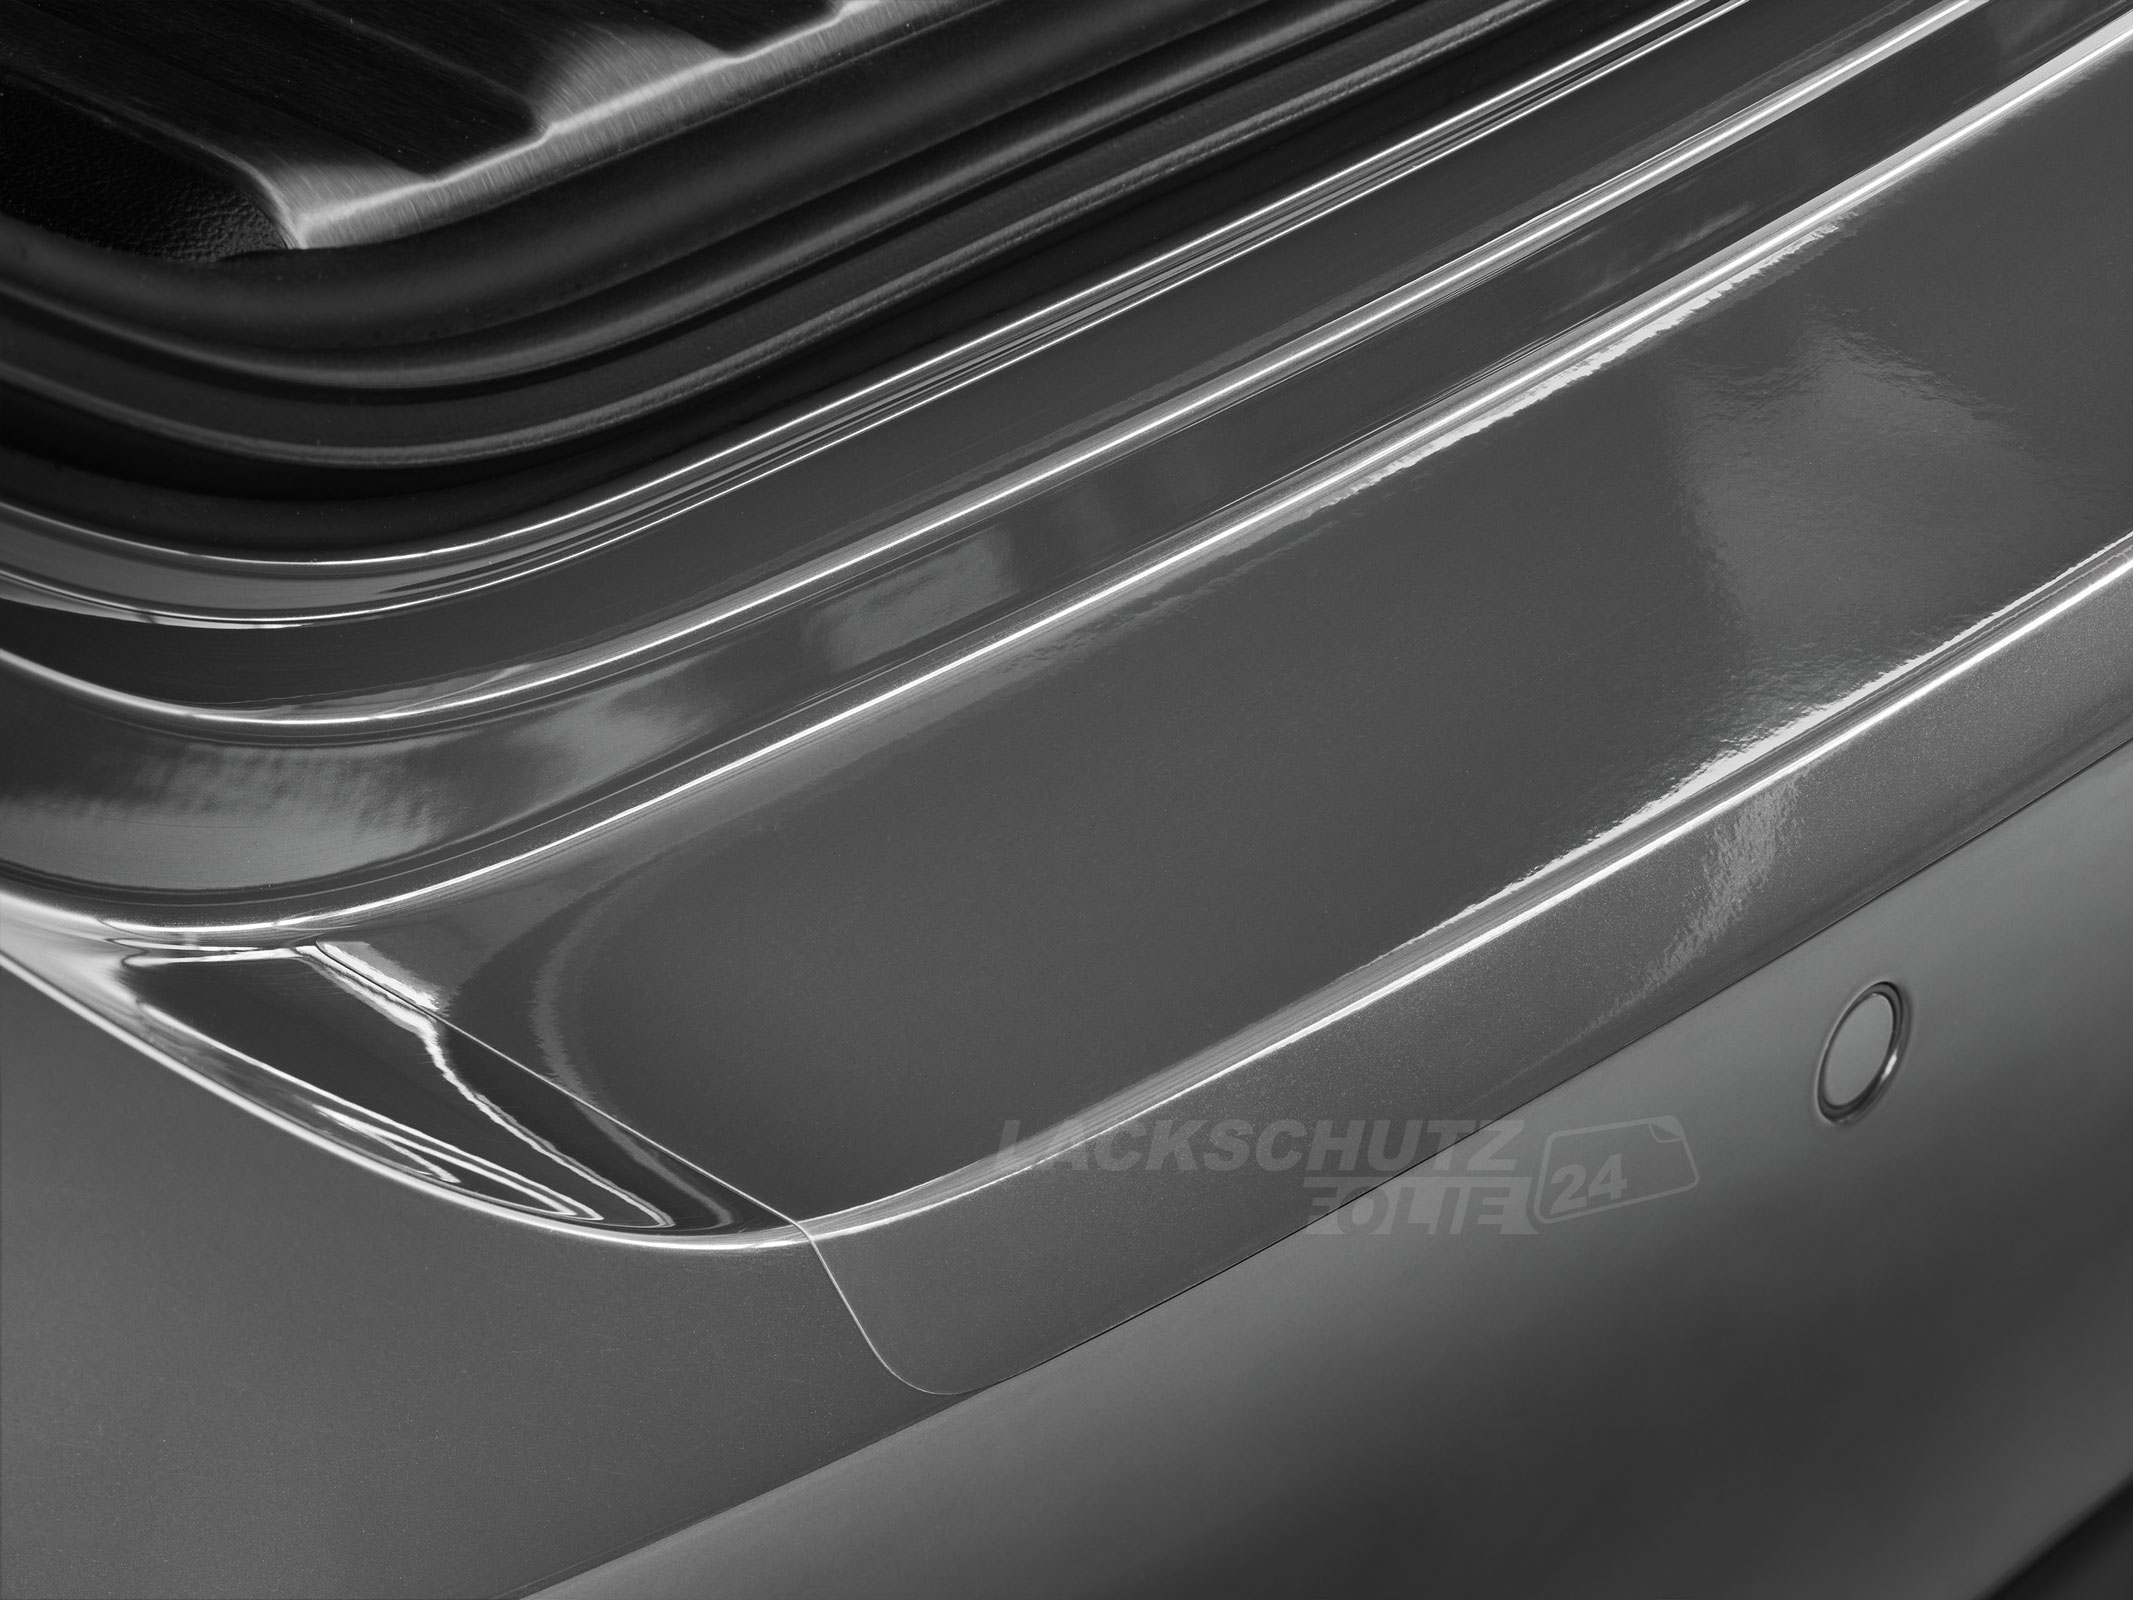 Ladekantenschutzfolie - Transparent Glatt Hochglänzend 240 µm stark für VW / Volkswagen T5  BJ 07/2010- 06/2015